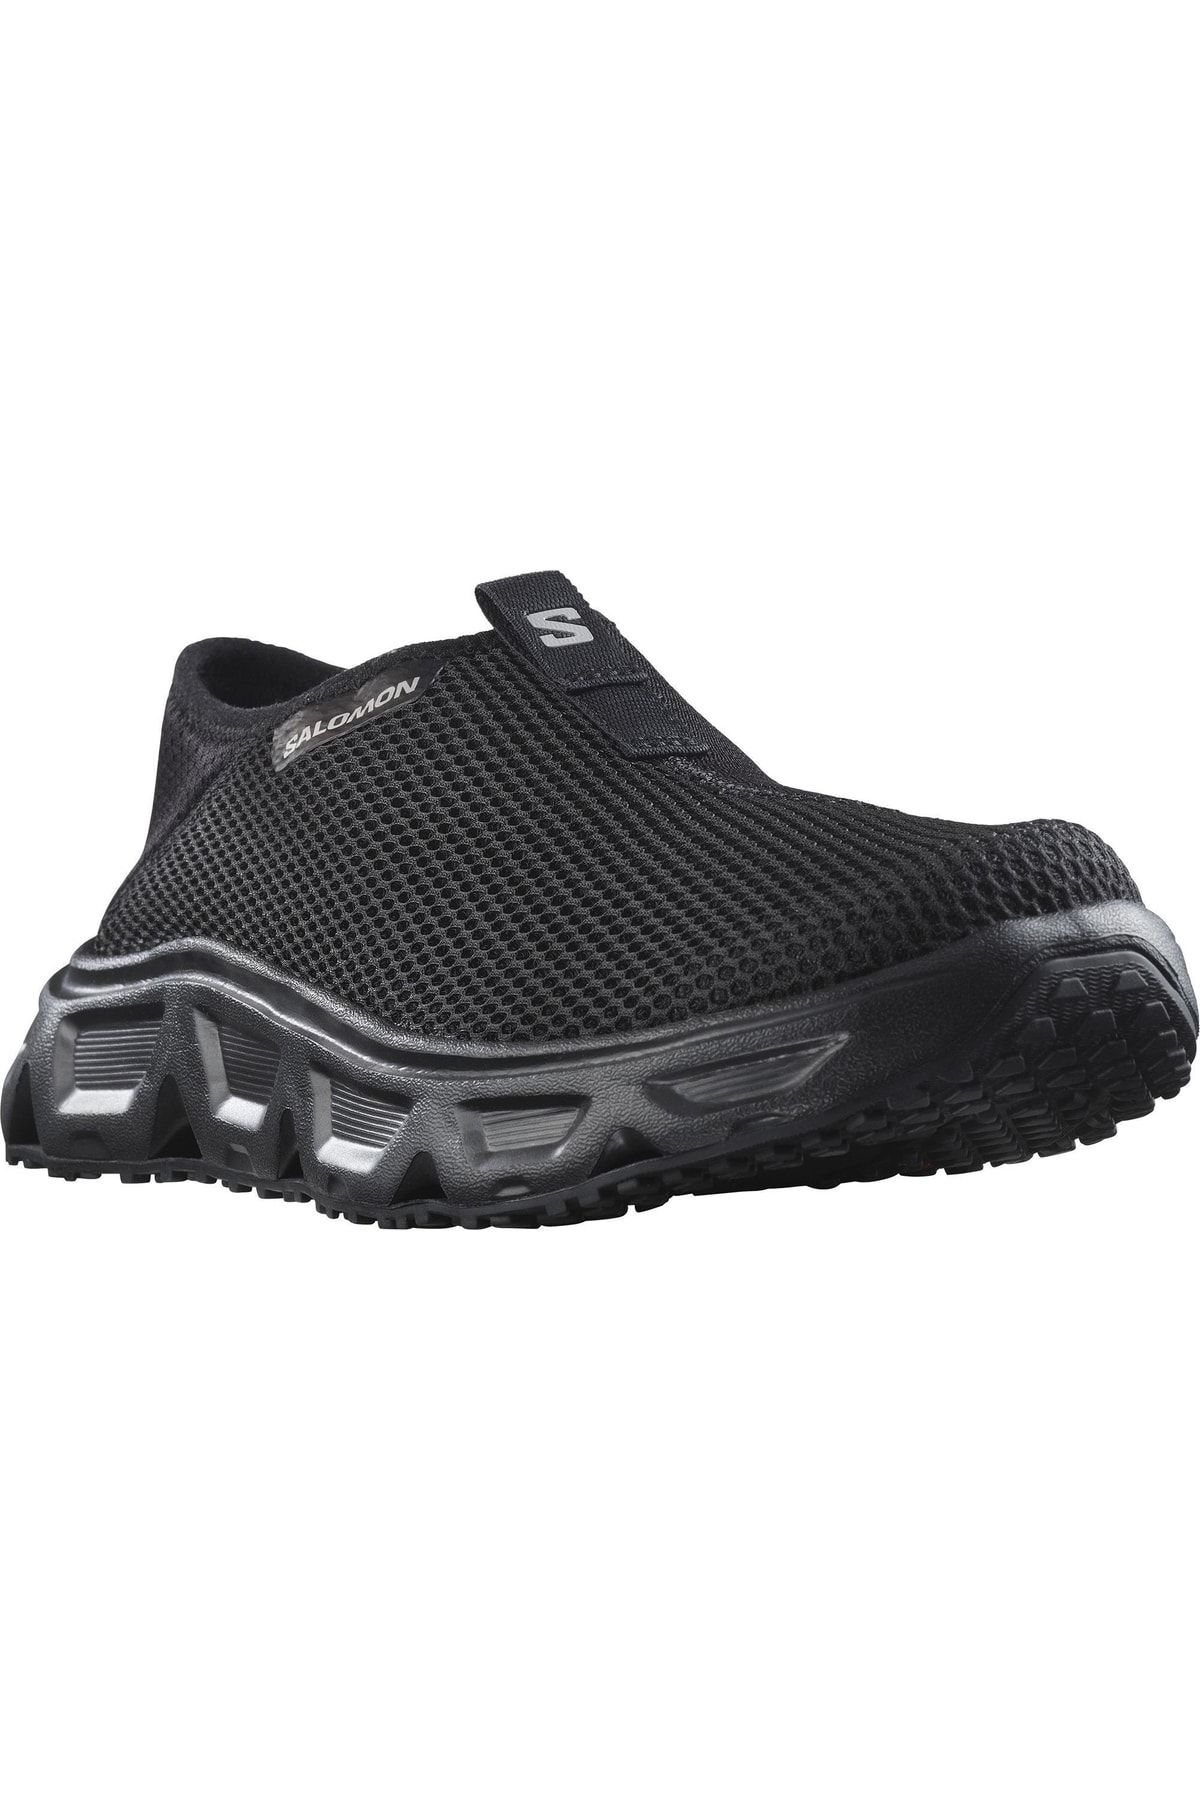 Salomon Reelax Moc 6.0 کفش در فضای باز مردان سیاه L47111500